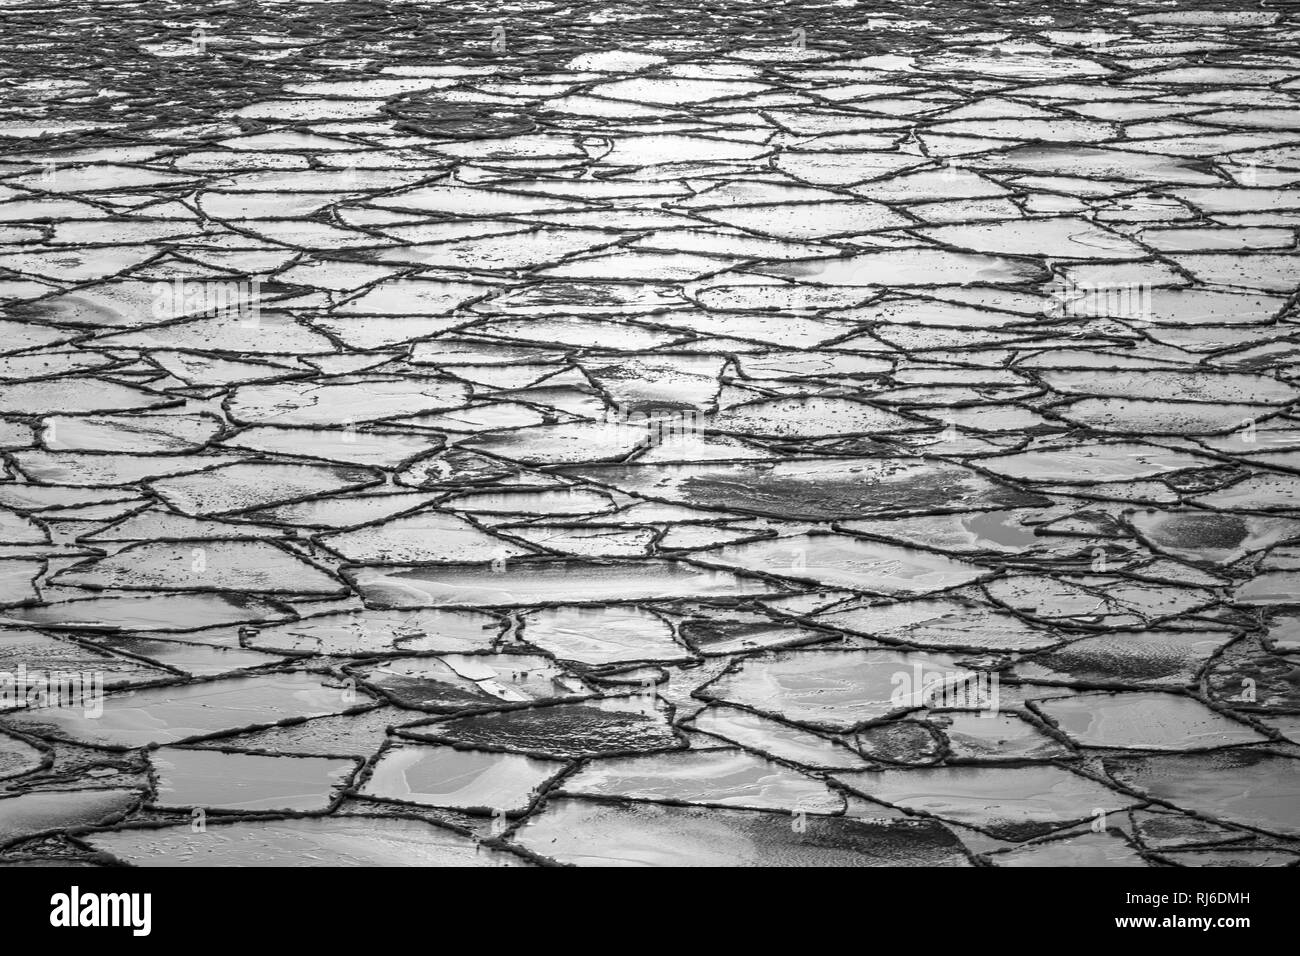 Ostsee mit Eisschollen in schwarz-weiß Stock Photo